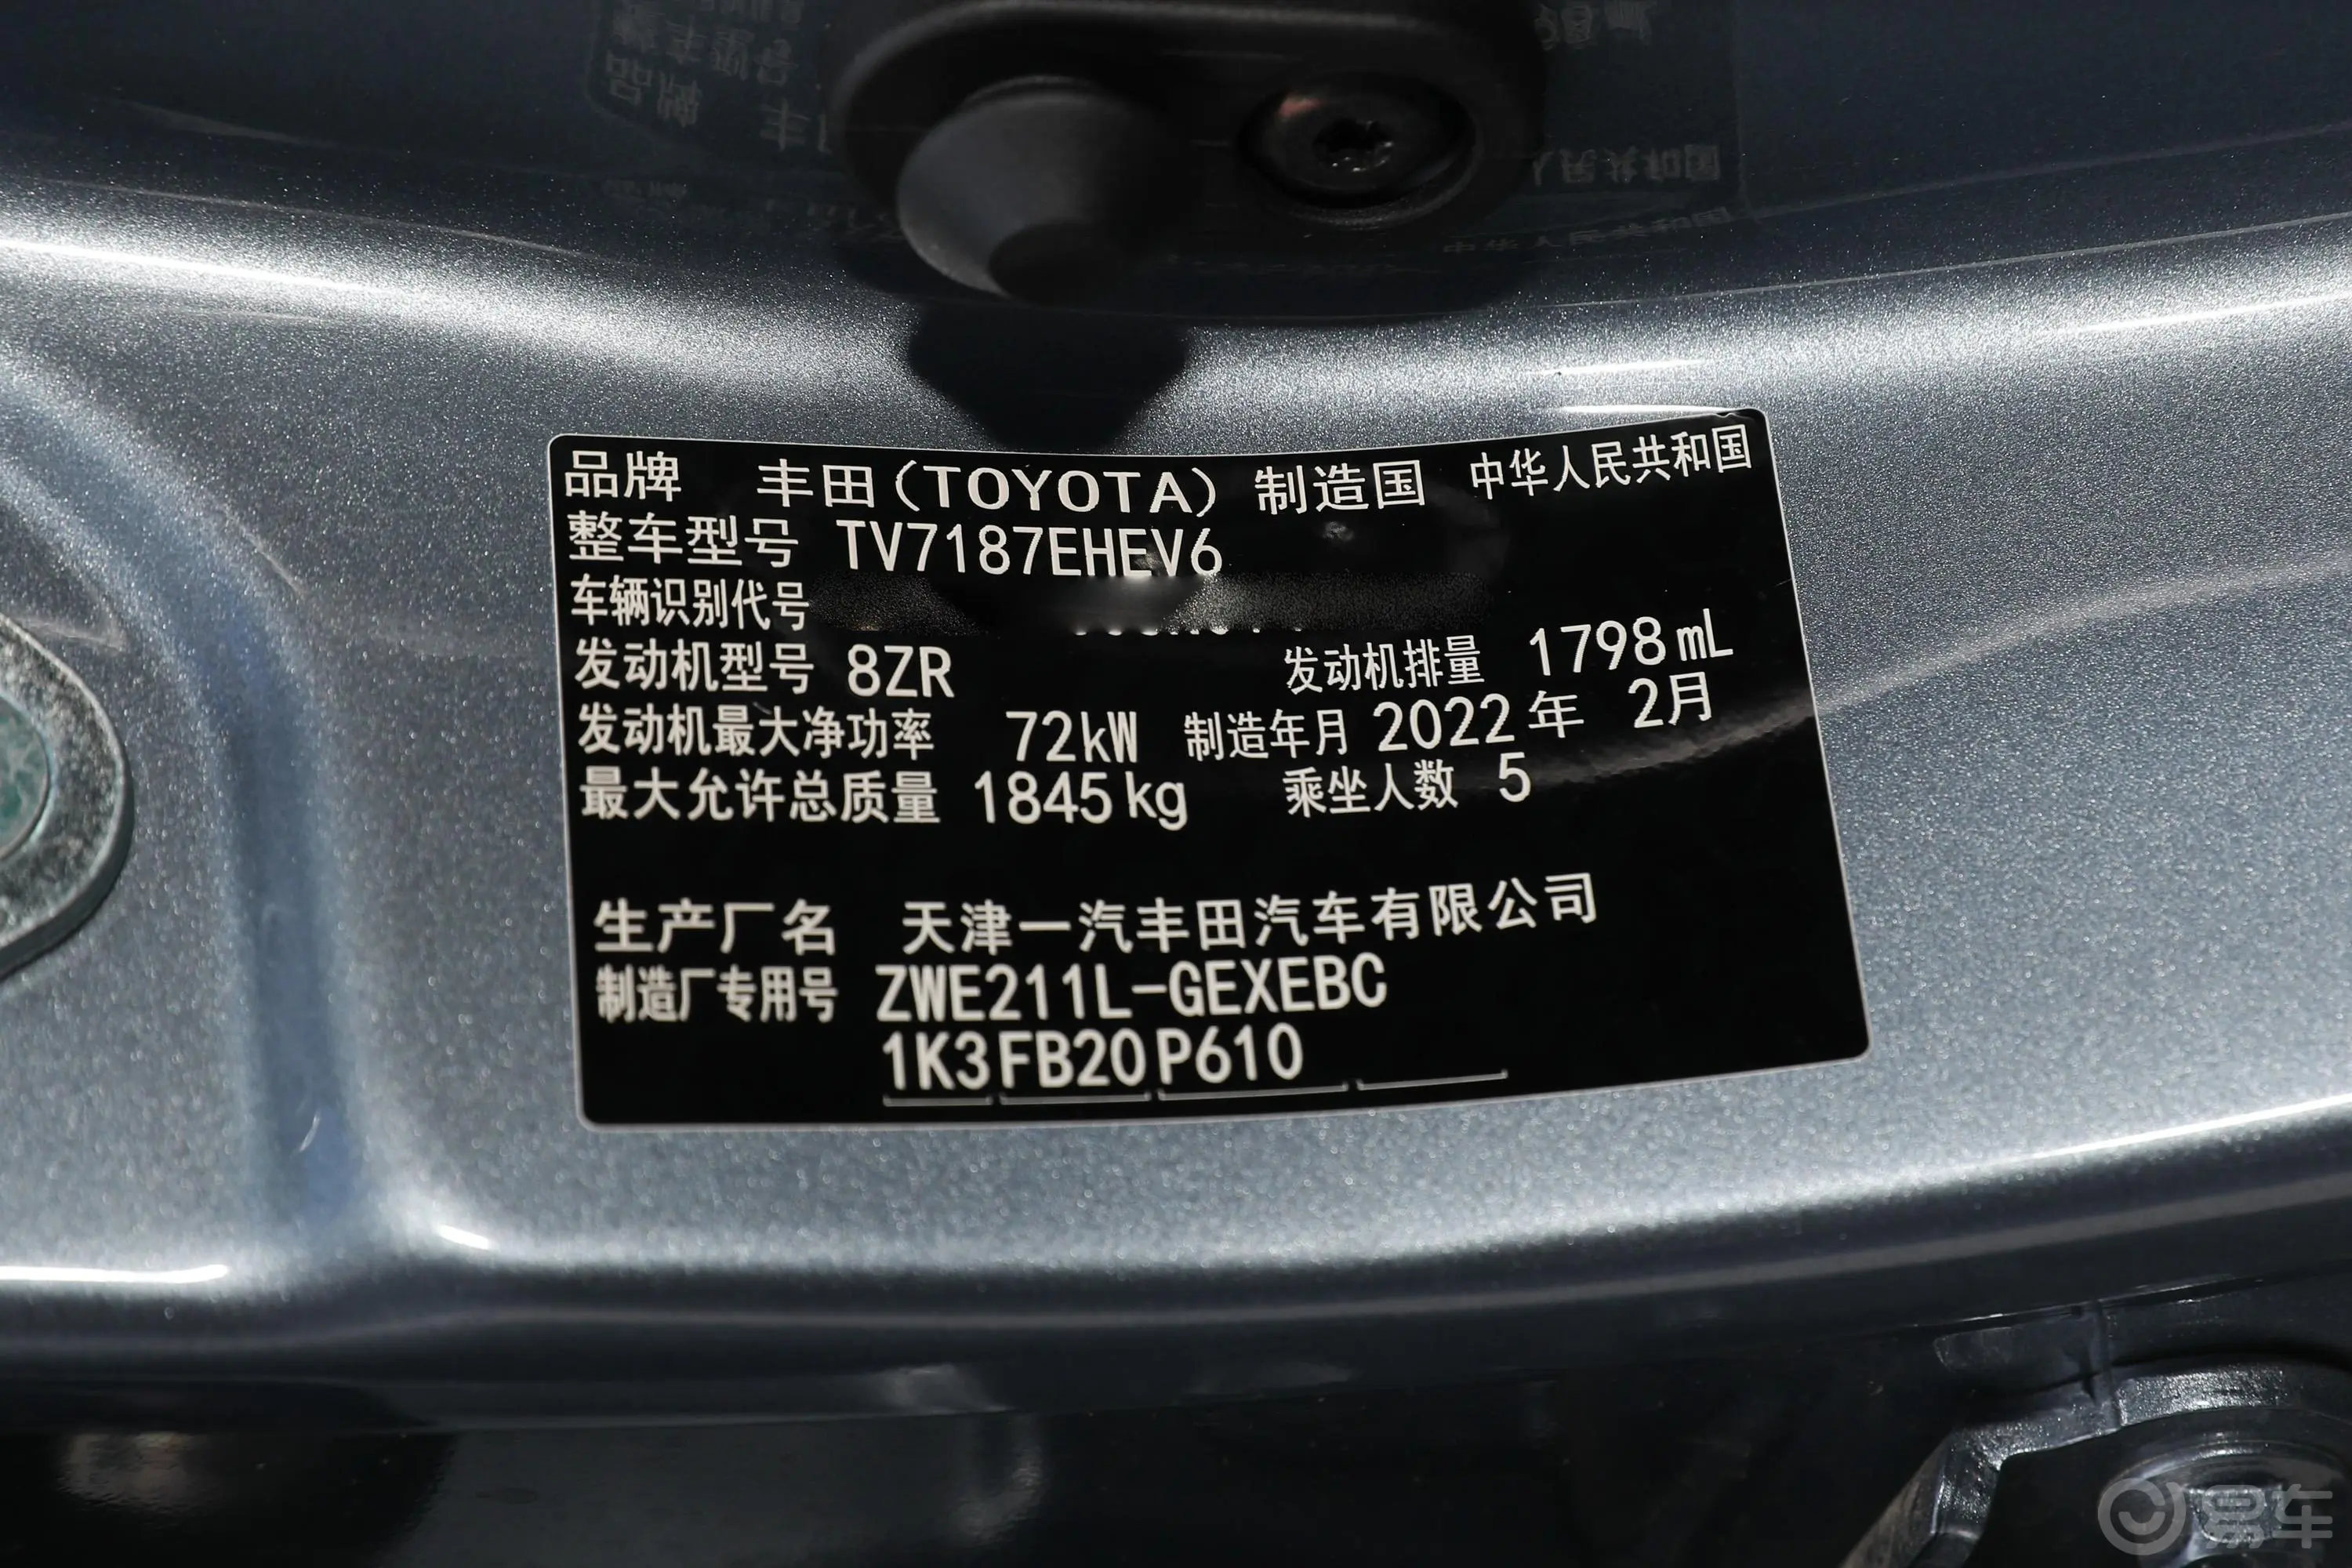 卡罗拉双擎 1.8L E-CVT 精英版车辆信息铭牌